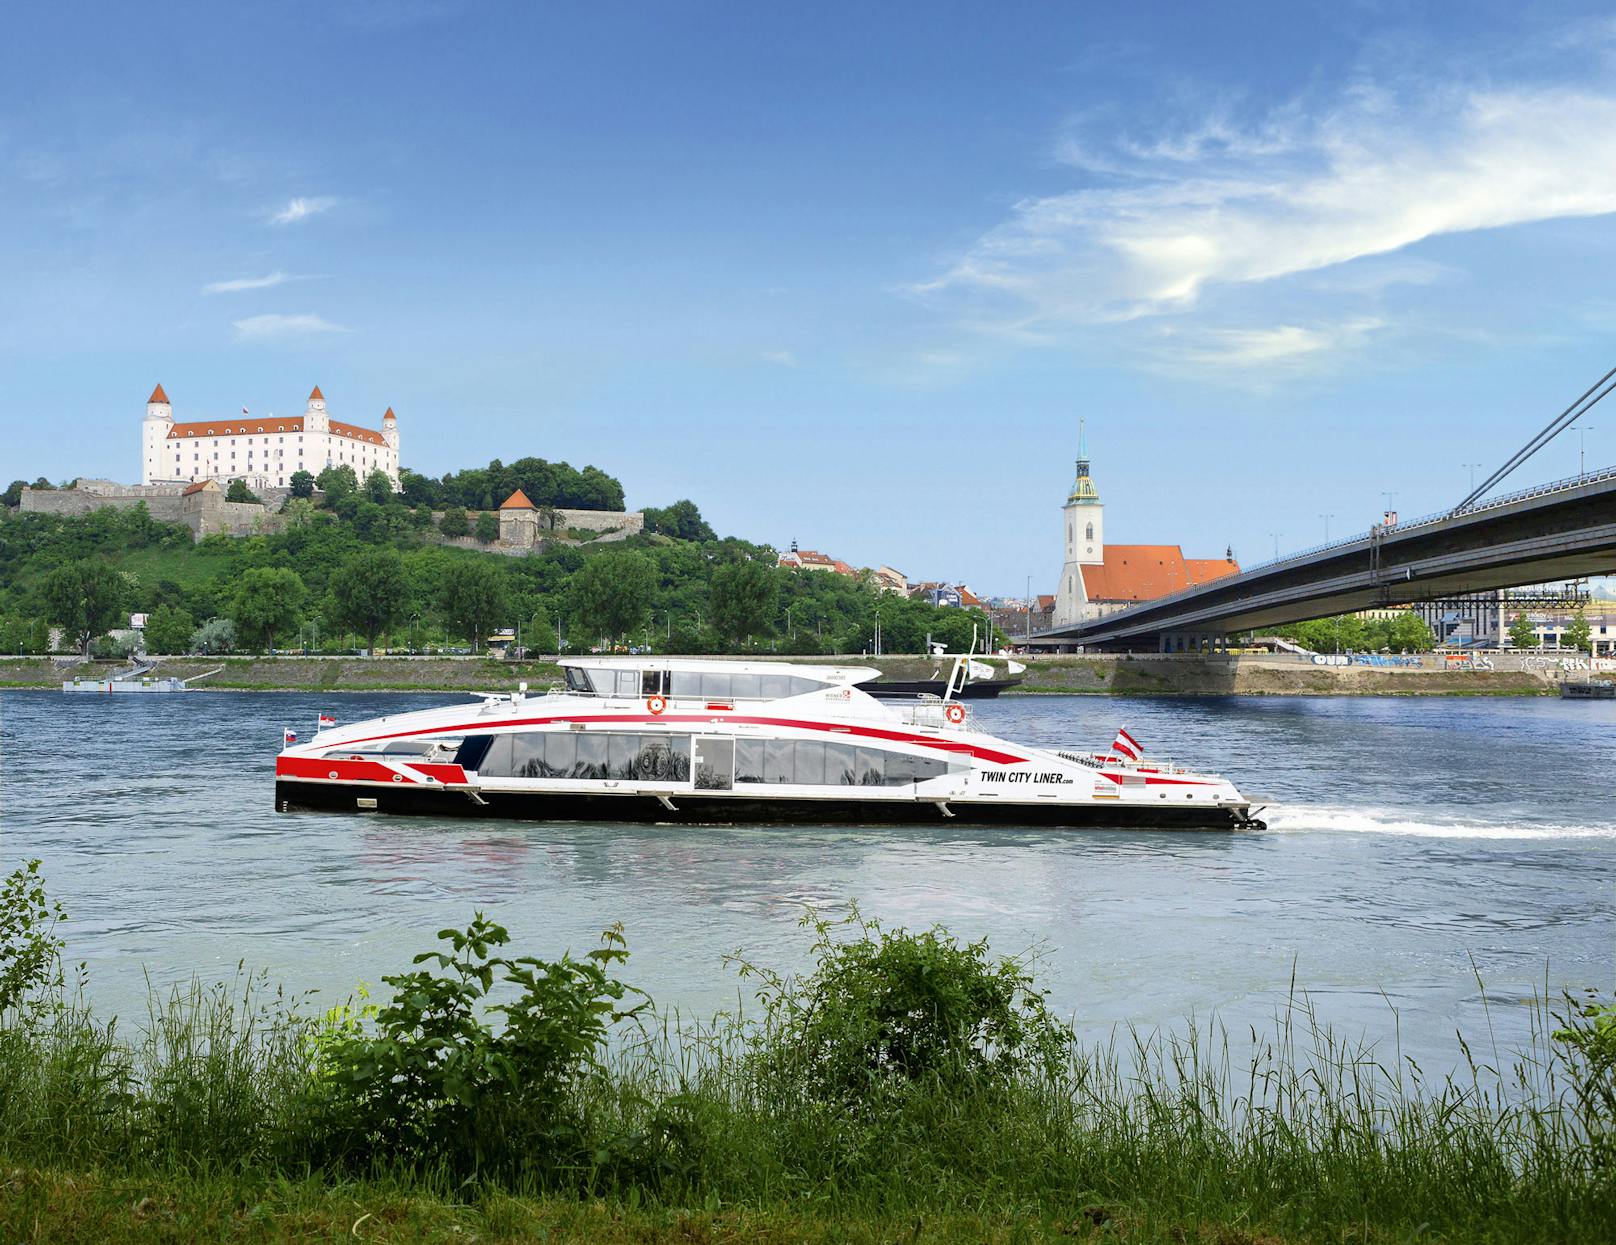 Ab 1. August 2020 kehrt der neue Twin City Liner wieder auf seine Stammstrecke zurück und verbindet vorerst drei Mal wöchentlich Wien mit der slowakischen Hauptstadt Bratislava.